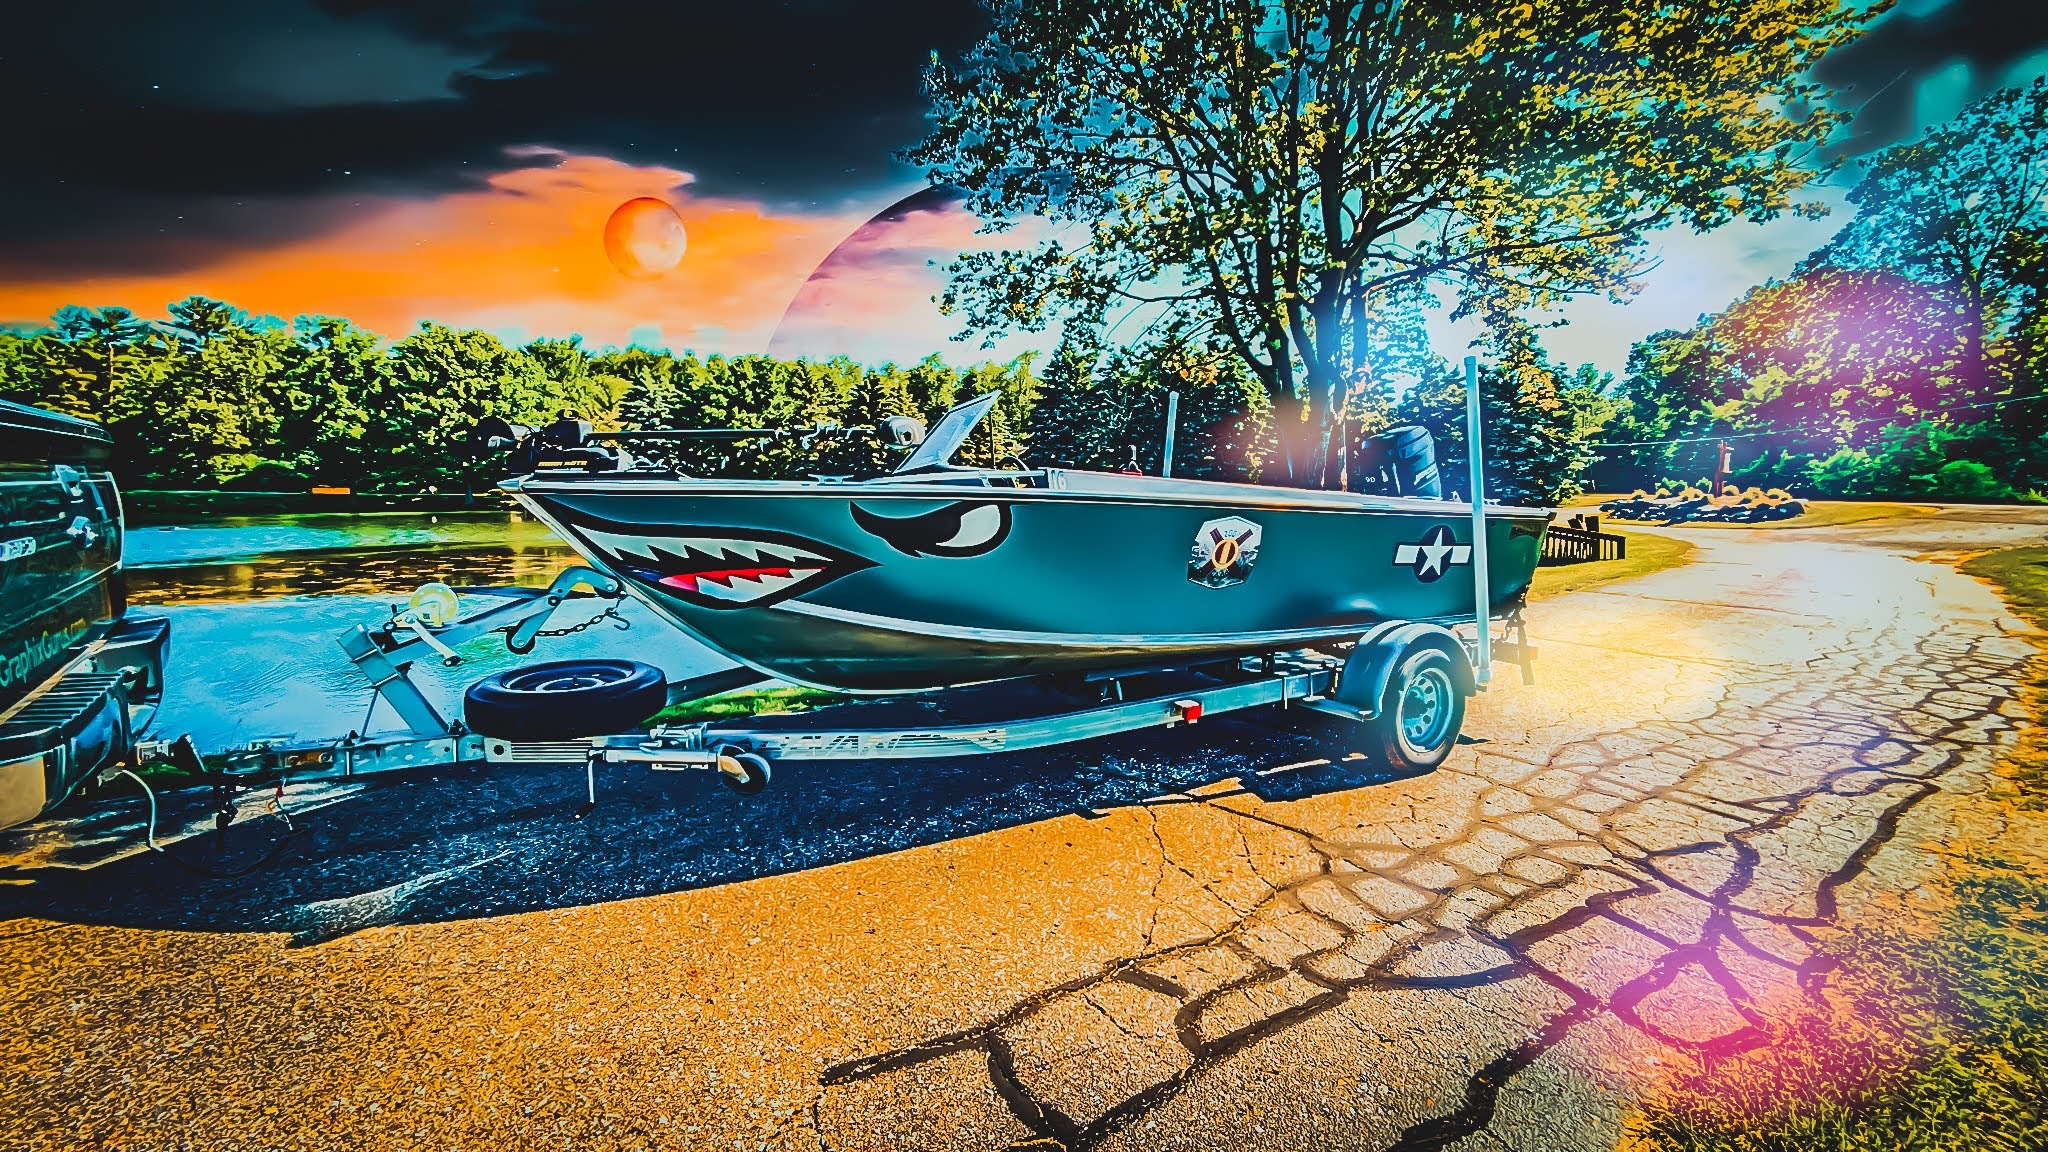 Custom Fishing Boat Wrap for Sponsors